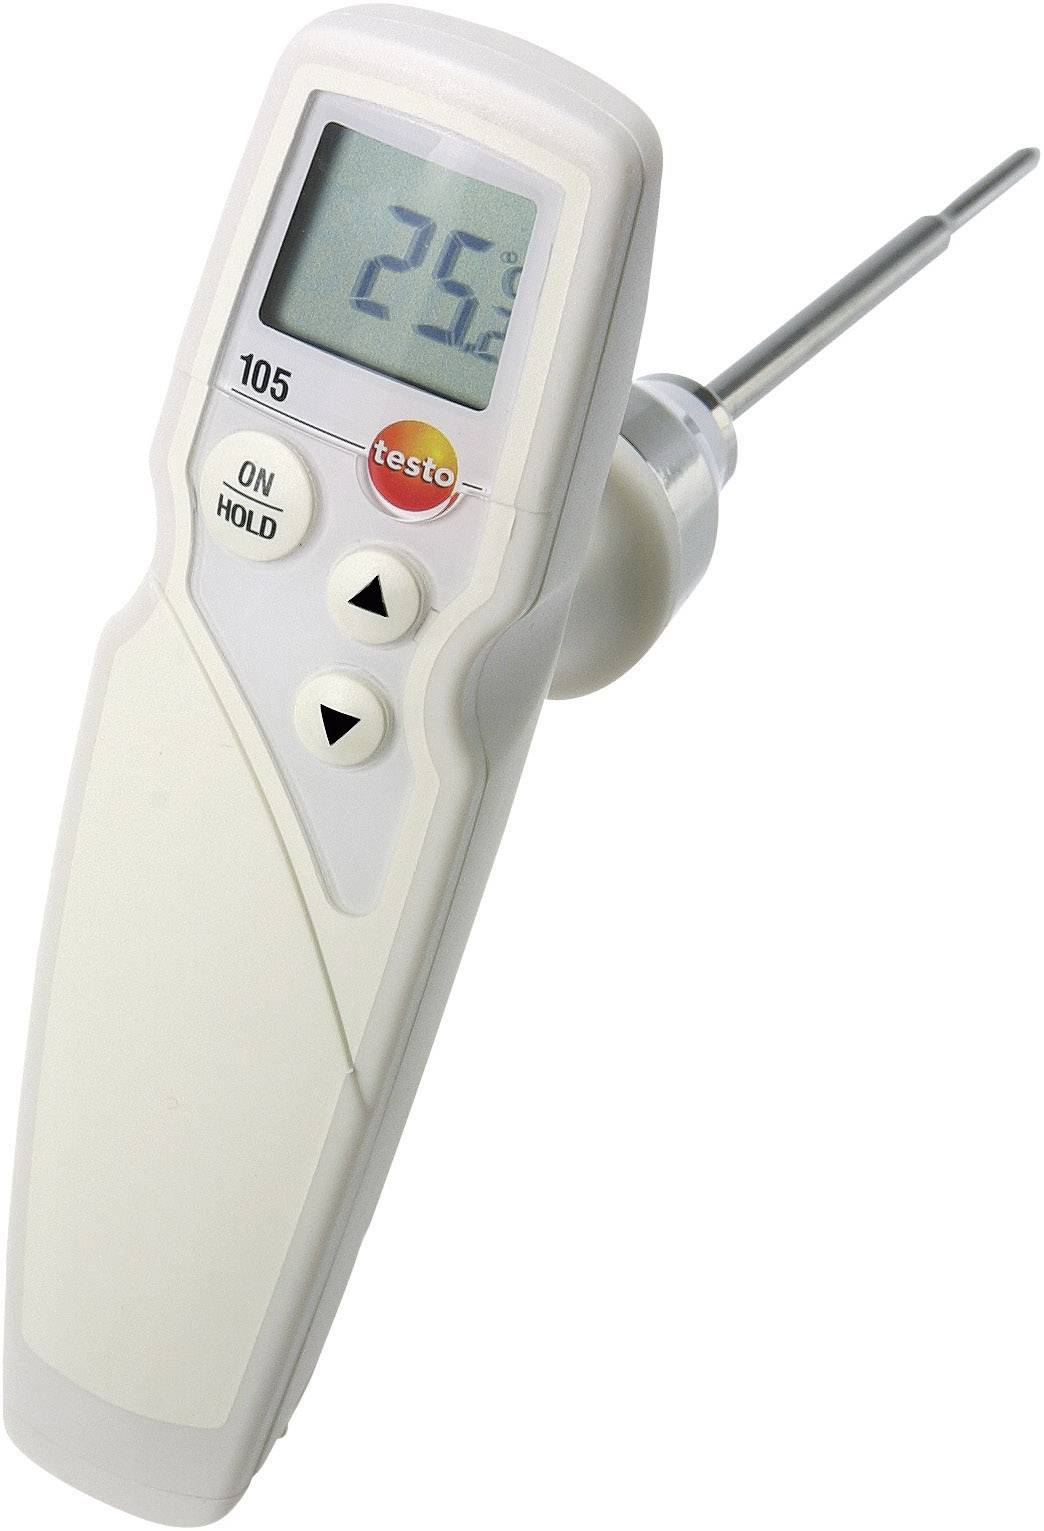 TESTO Einstichthermometer (HACCP) testo 105 Messbereich Temperatur -50 bis 275 °C Fühler-Typ K HACCP